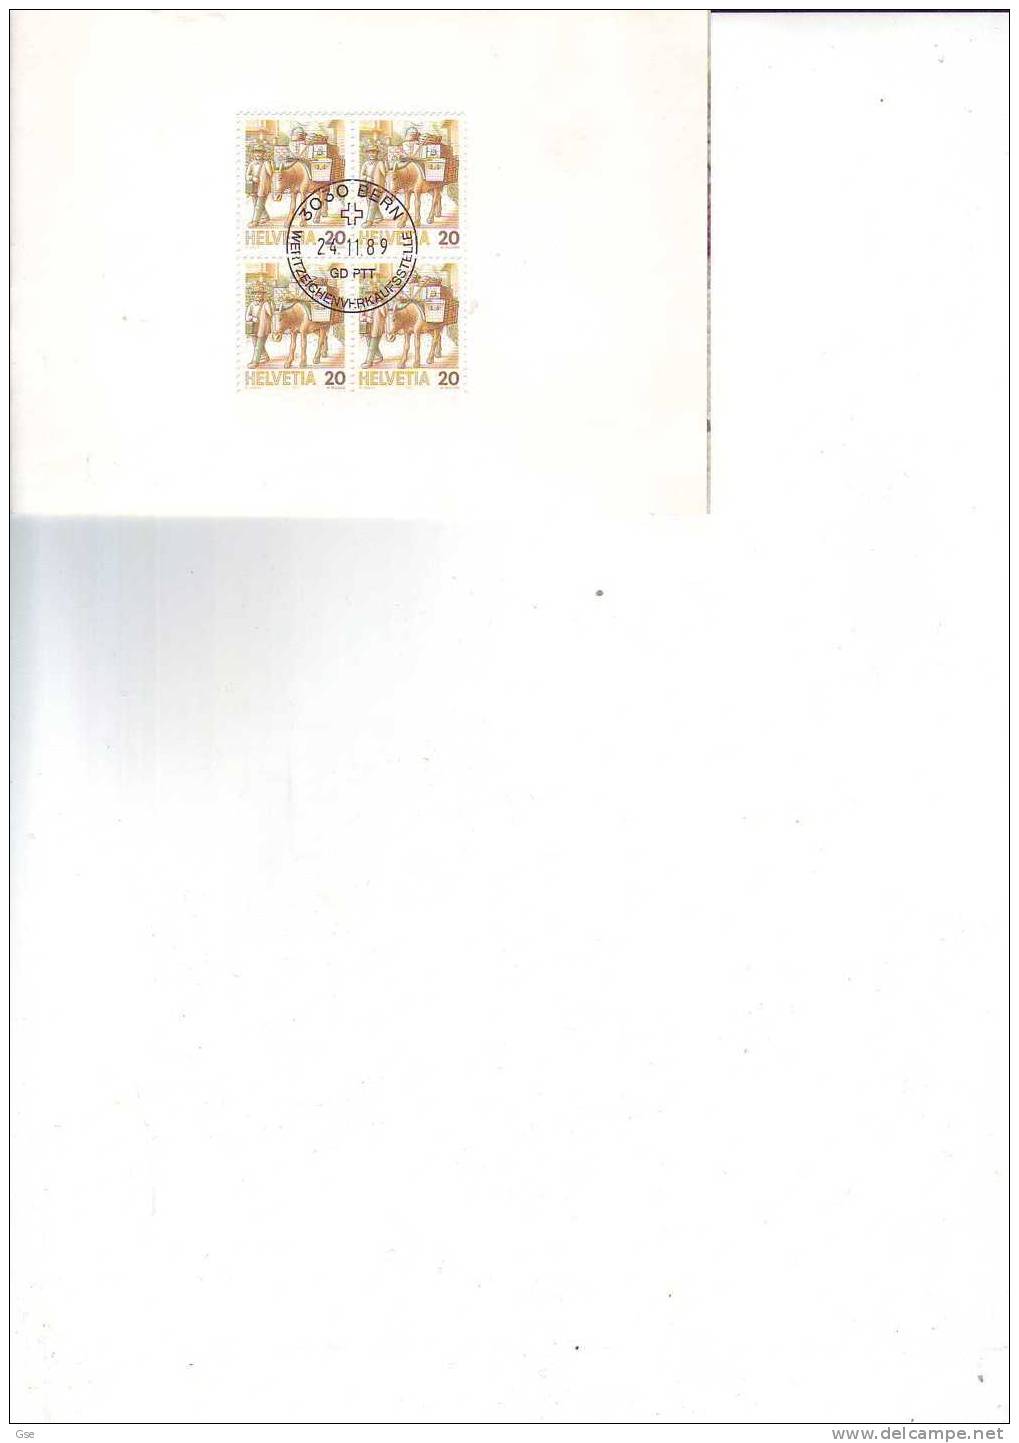 SVIZZERA 1989 - Yvert  1264 (x4) - Cartoncino Con Annullo Speciale  Illustrato - Servizi Postali - Esel